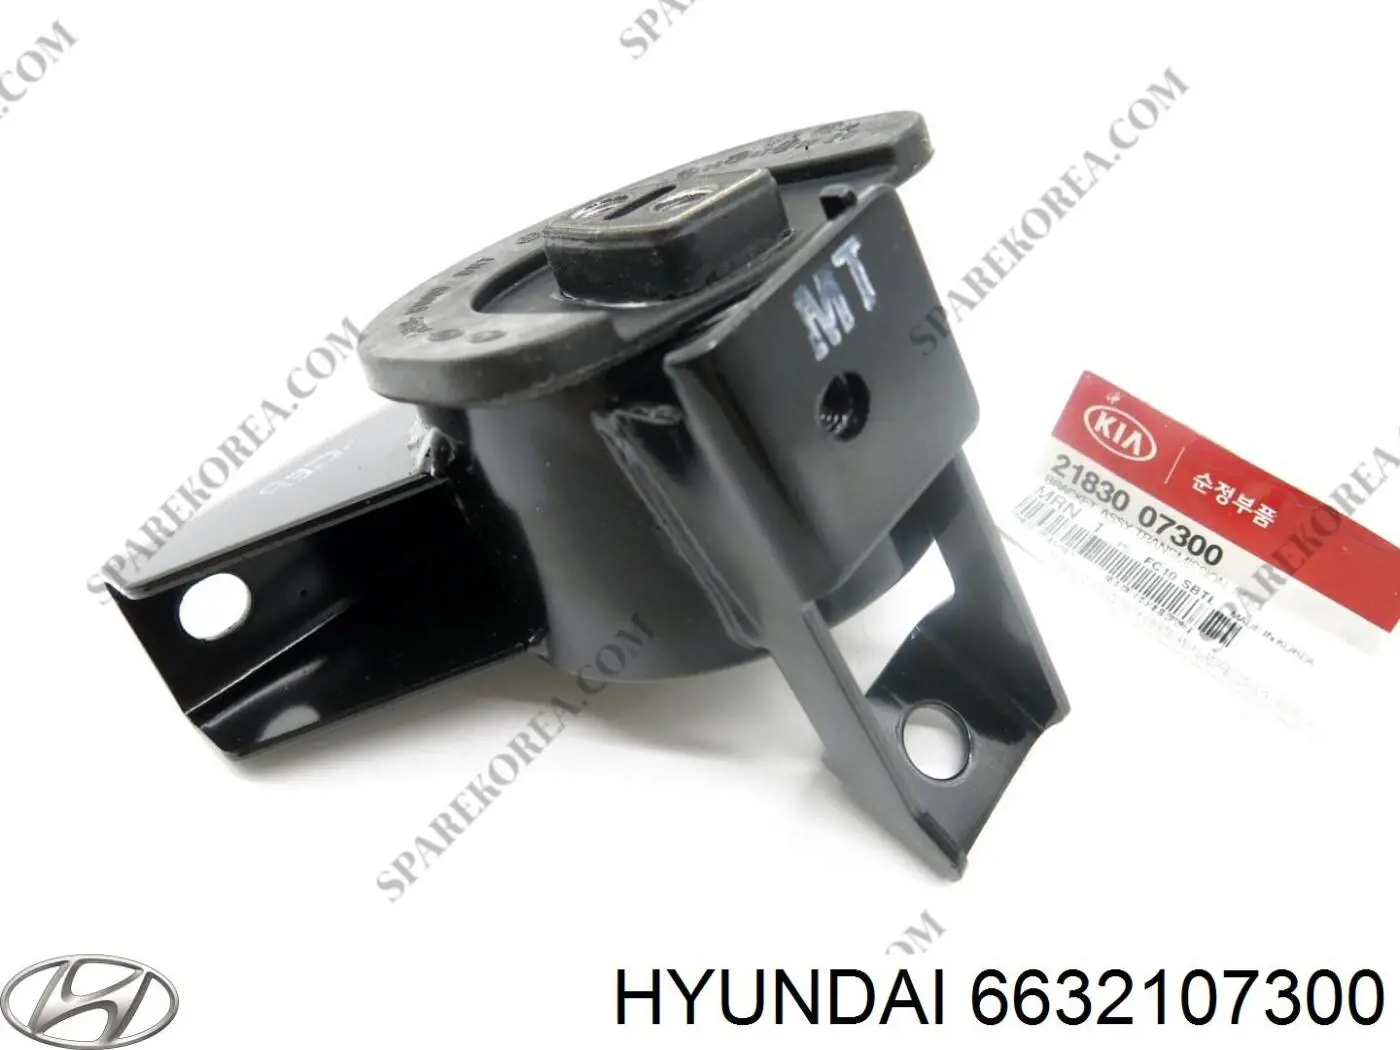 6632107300 Hyundai/Kia guardabarros delantero derecho